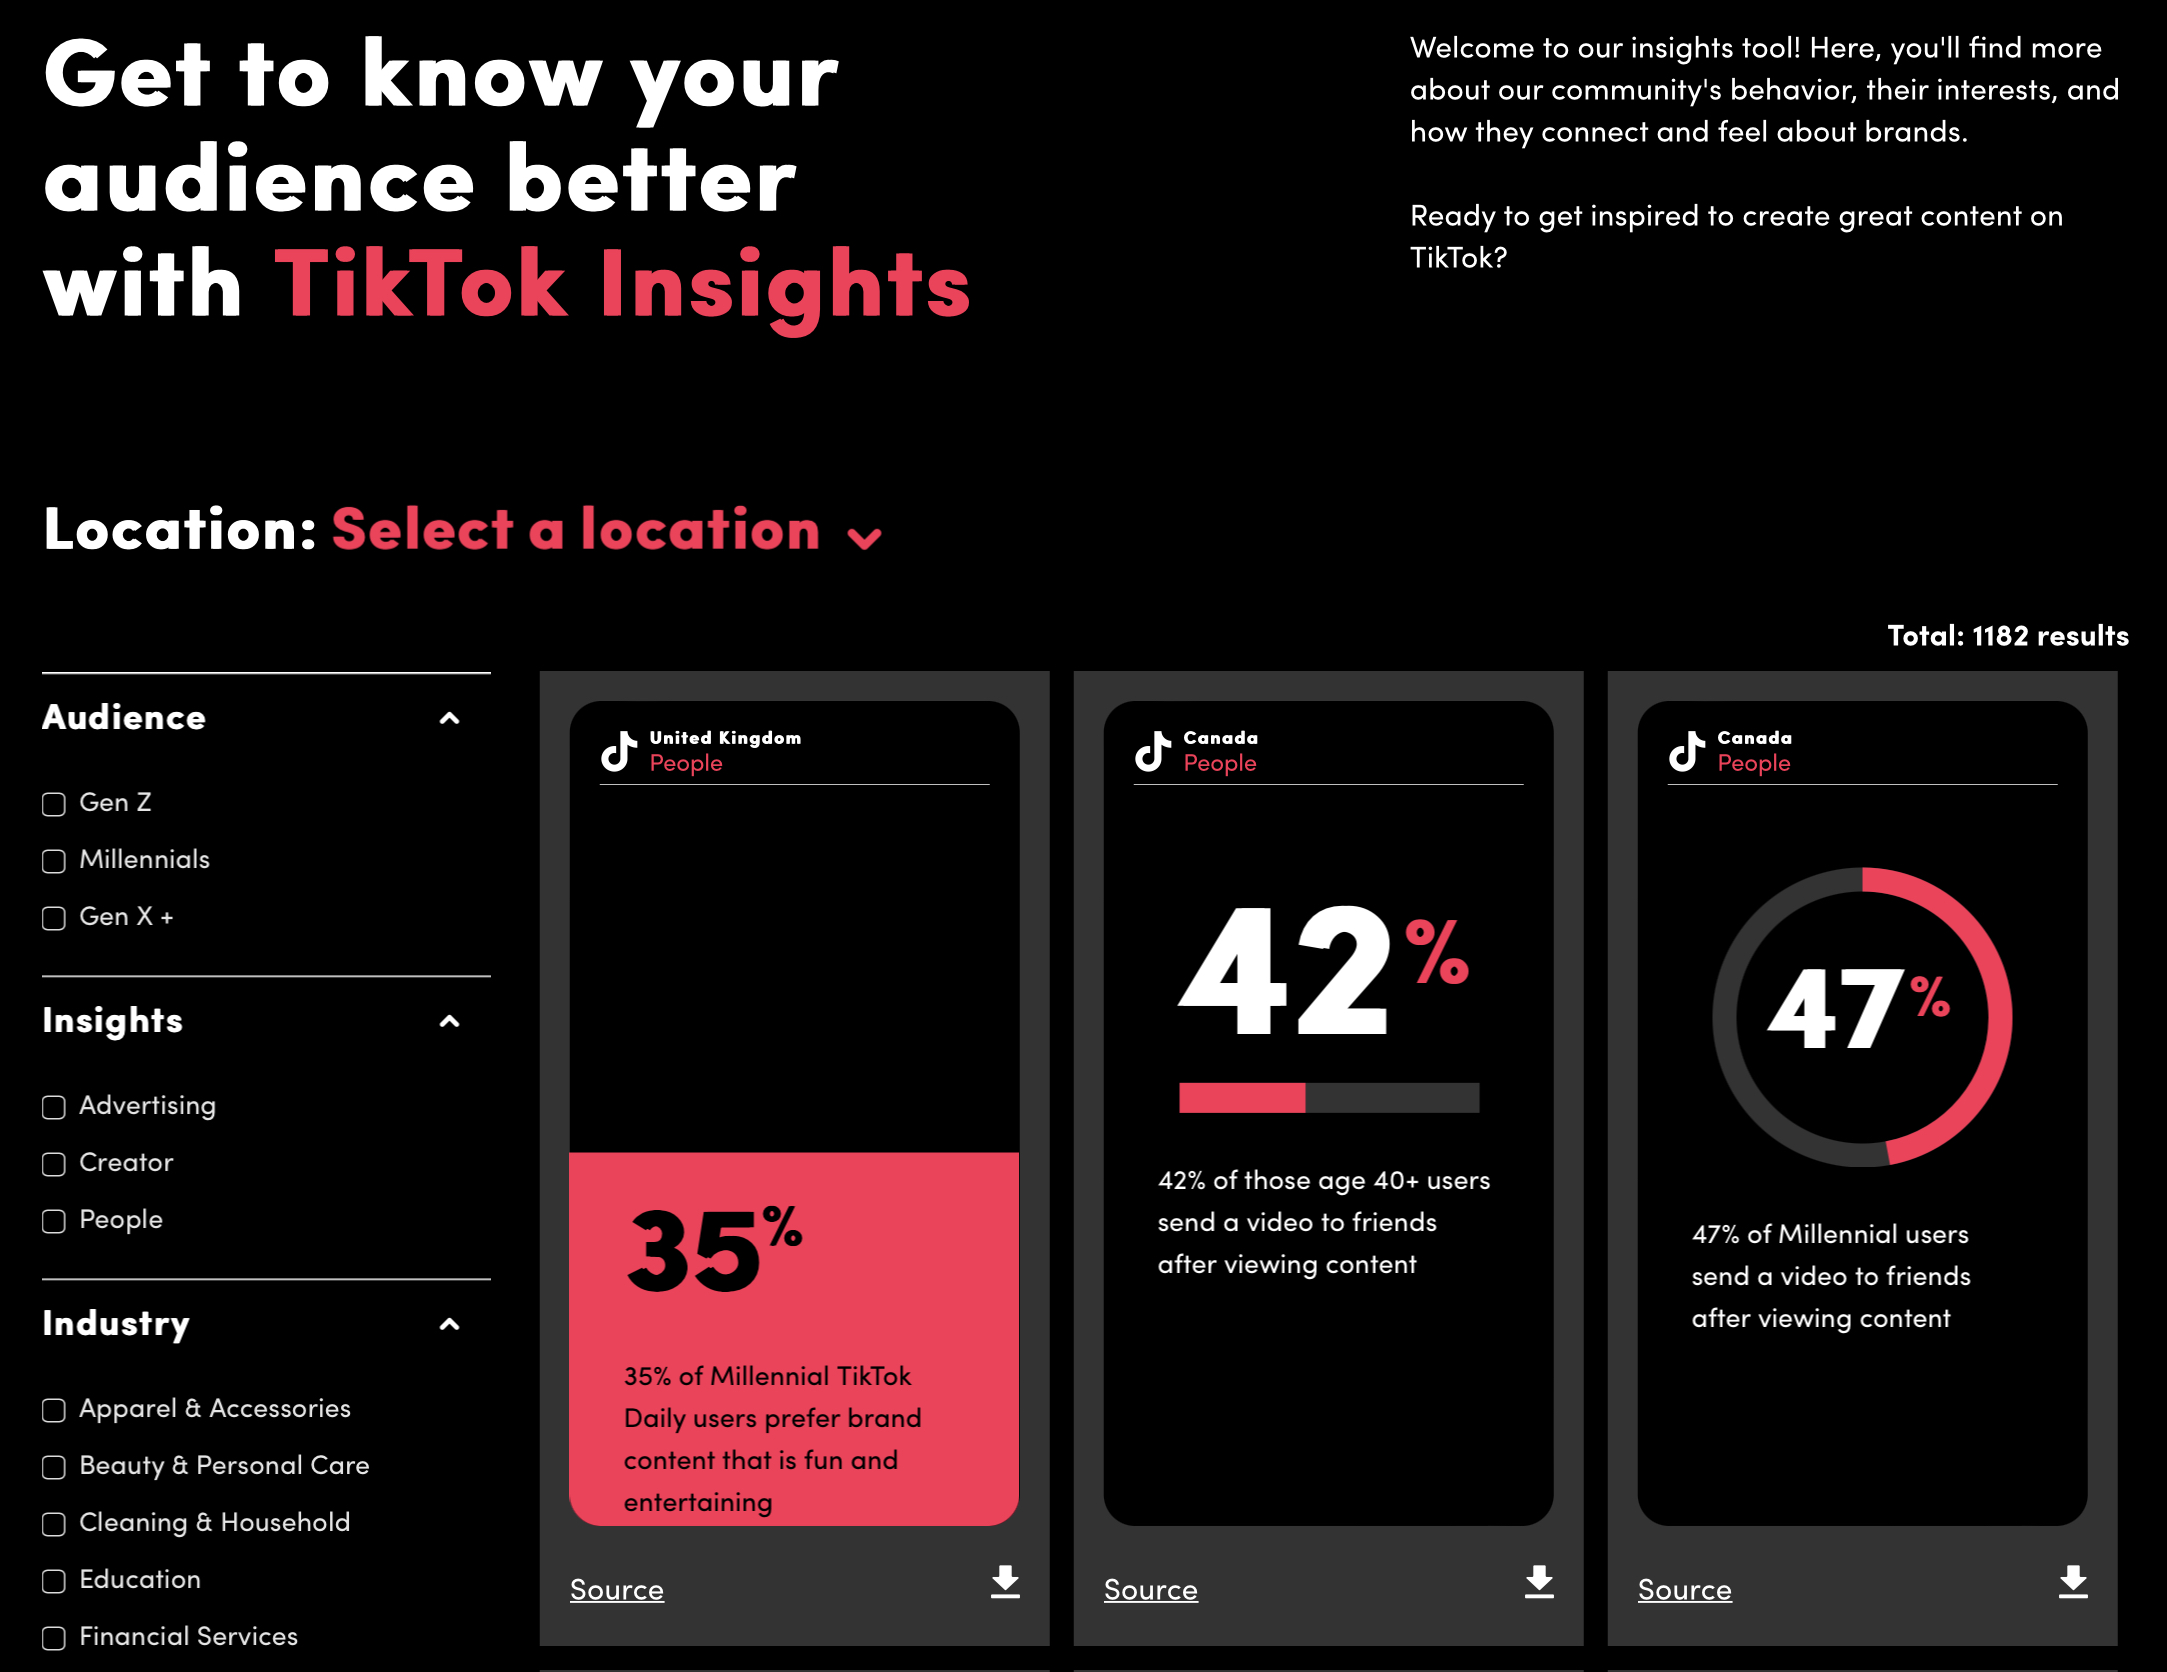 La novedosa herramienta TikTok ofrece información de utilidad para los expertos en marketing - La nueva herramienta TikTok brinda informacion util para los especialistas